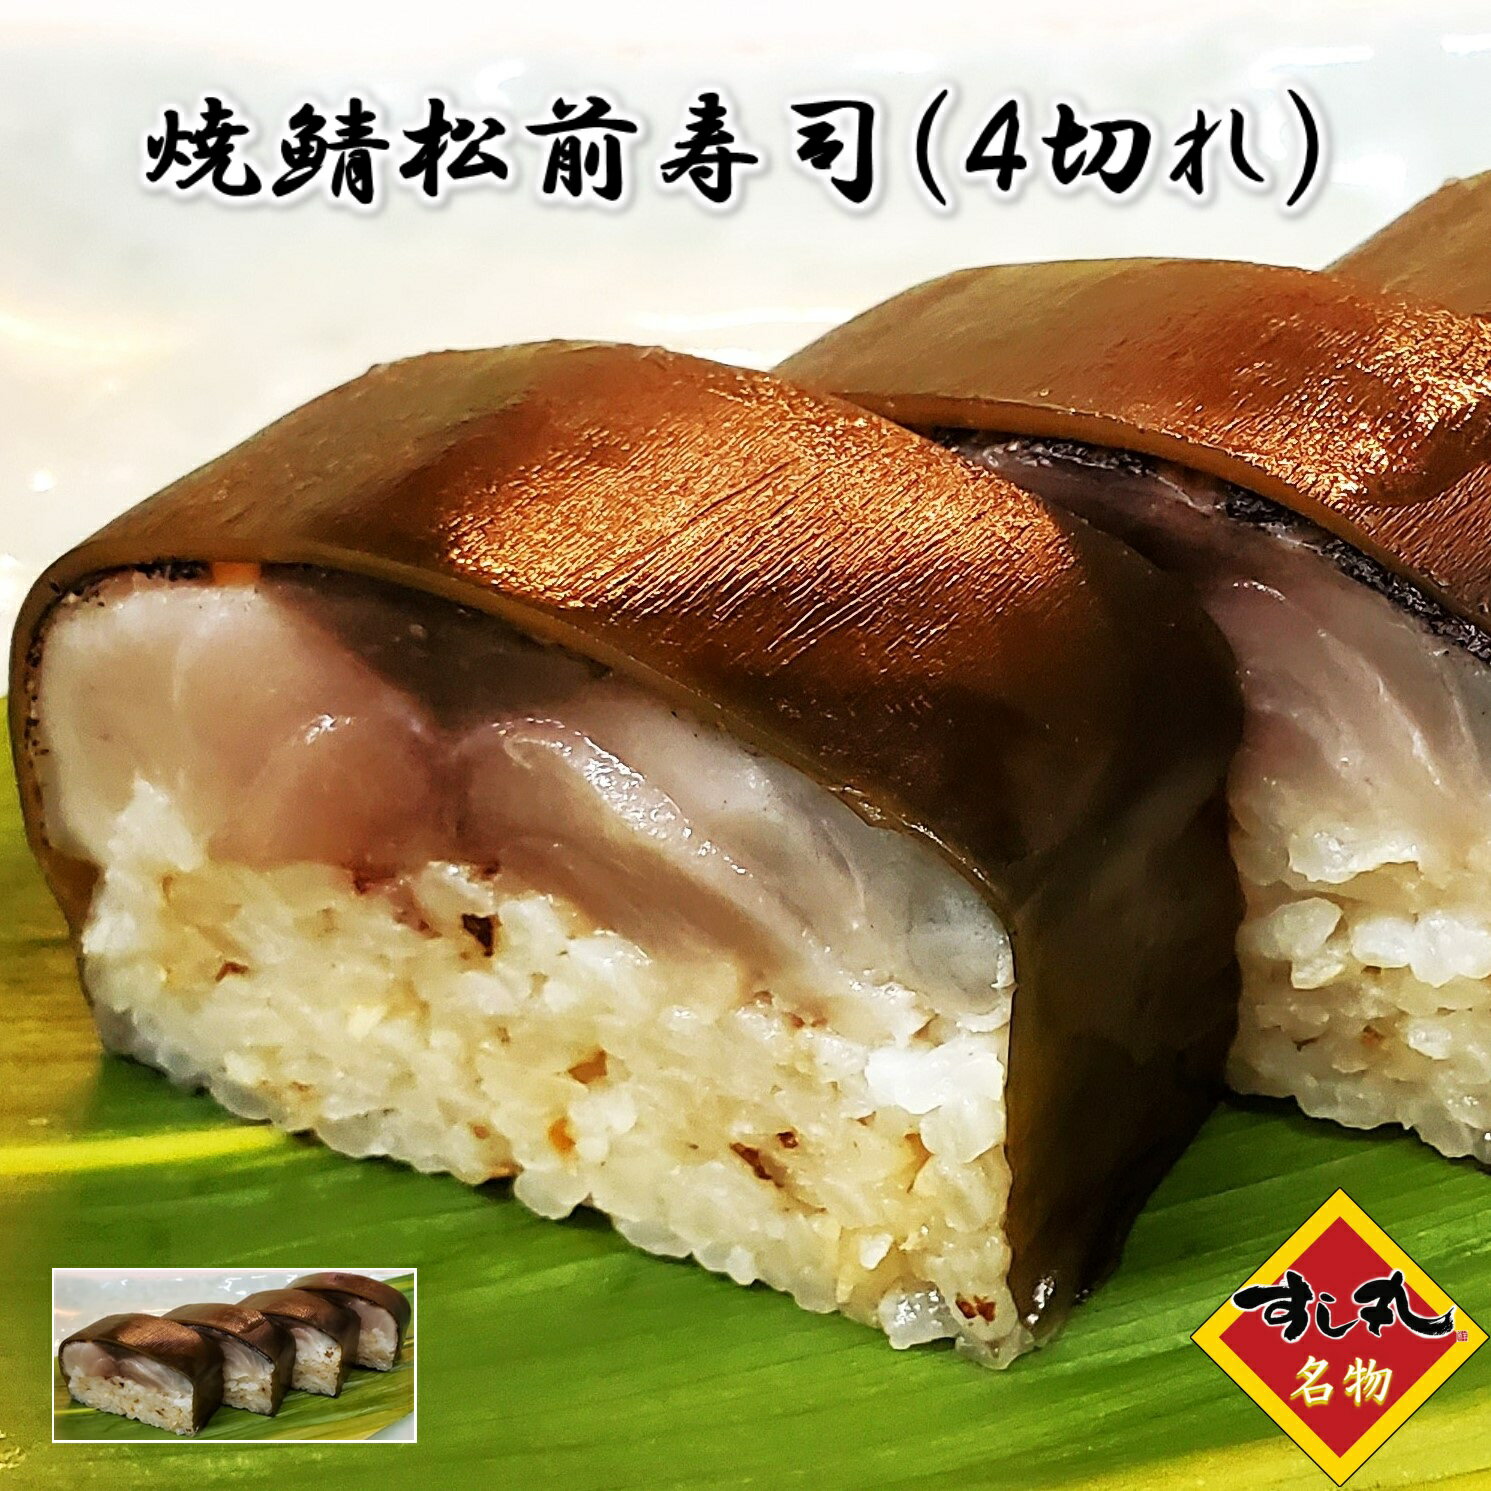 すし丸名物の焼鯖松前寿司は、伝統の味を現代に伝える逸品です。肉厚で旨みが凝縮された真サバを使用し、職人が一つ一つ丁寧に手造りしています。そのサバには、ピリッとした刺激が特徴の有馬山椒を加え、風味豊かな自家製黒板昆布と共に、箱寿司の形で仕上げられています。松前寿司ならではのこの絶品は、ご自宅での特別な日の食卓や、大切な方へのお土産としても最適です。一口食べれば、その旨さに納得の声が漏れることでしょう。この寿司を通じて、日本の美味しさを存分に味わってください。すし丸名物の焼鯖松前寿司は、伝統の味を現代に伝える逸品です。肉厚で旨みが凝縮された真サバを使用し、職人が一つ一つ丁寧に手造りしています。そのサバには、ピリッとした刺激が特徴の有馬山椒を加え、風味豊かな自家製黒板昆布と共に、箱寿司の形で仕上げられています。松前寿司ならではのこの絶品は、ご自宅での特別な日の食卓や、大切な方へのお土産としても最適です。一口食べれば、その旨さに納得の声が漏れることでしょう。この寿司を通じて、日本の美味しさを存分に味わってください。